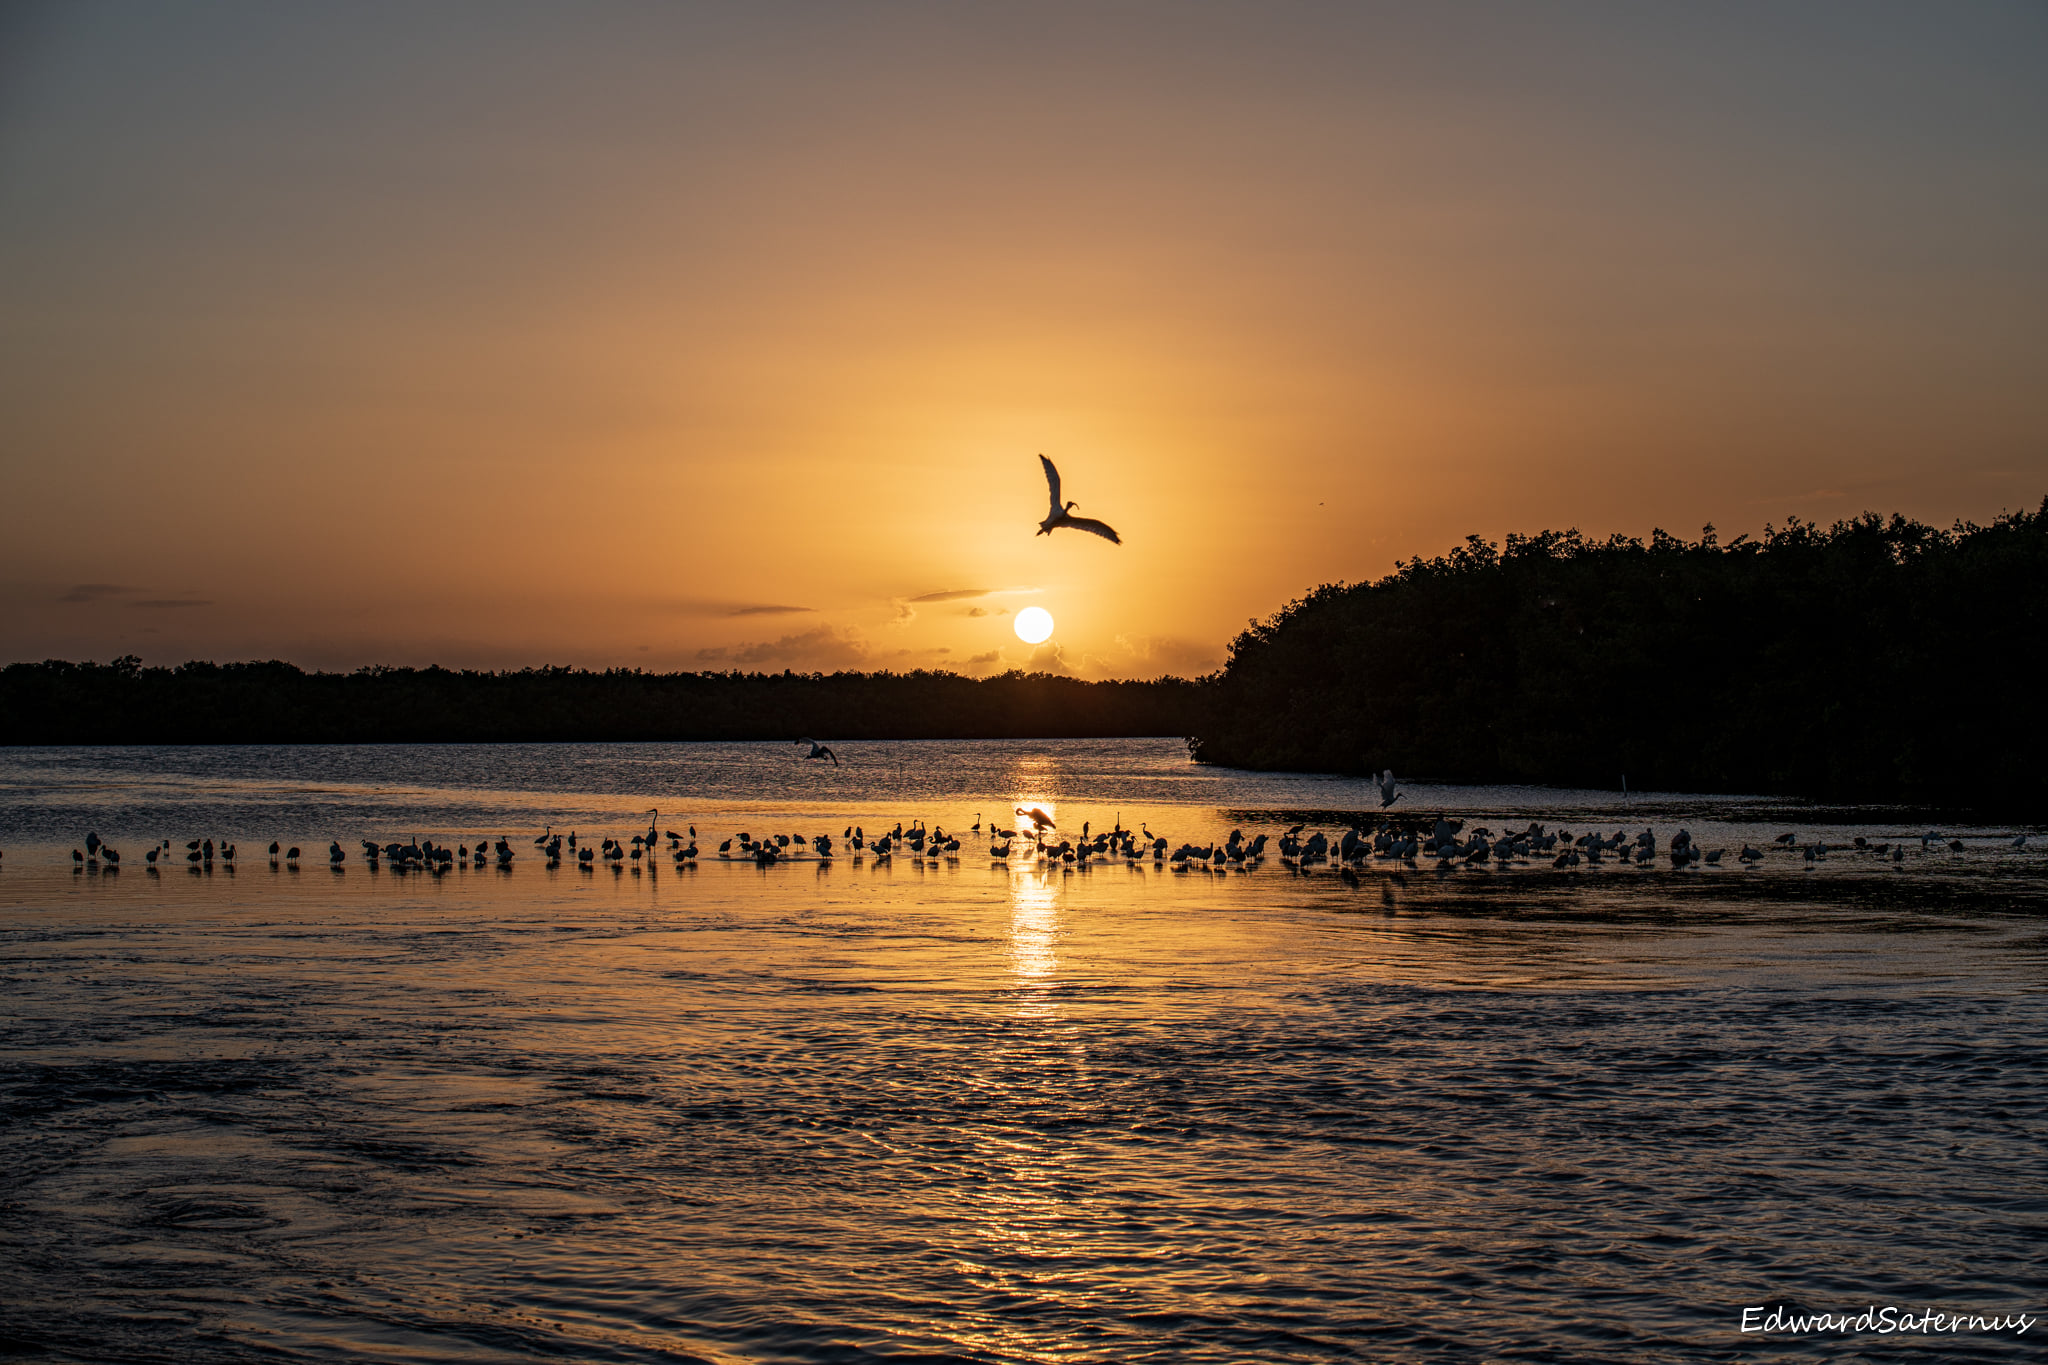 Sunset at J.N. “Ding” Darling National Wildlife Refuge